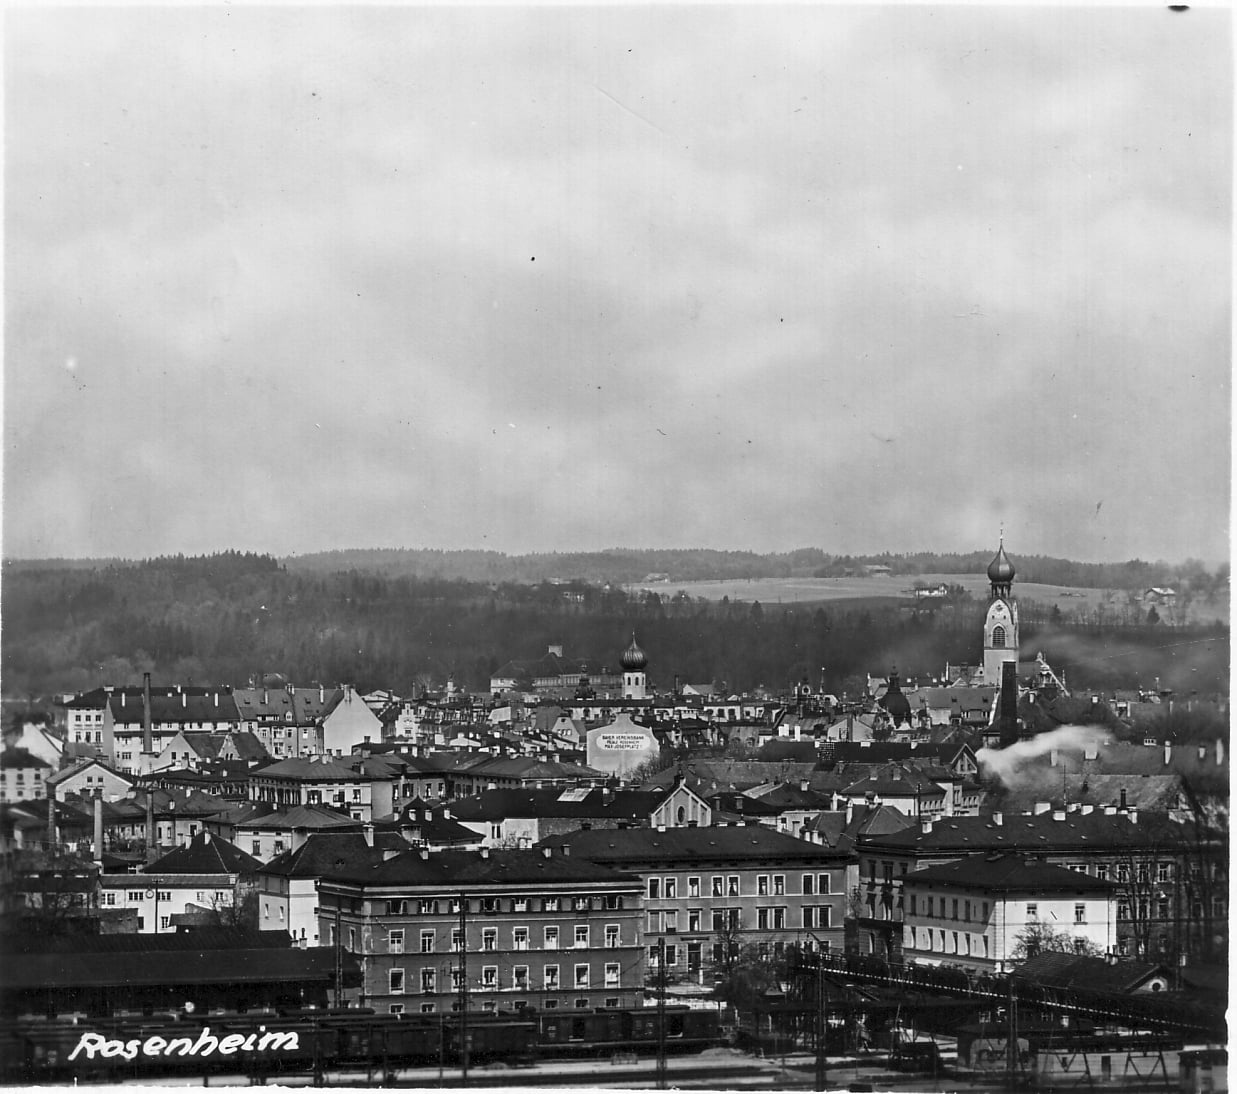 Panoramabild von der Stadt Rosenheim im Jahr 1941